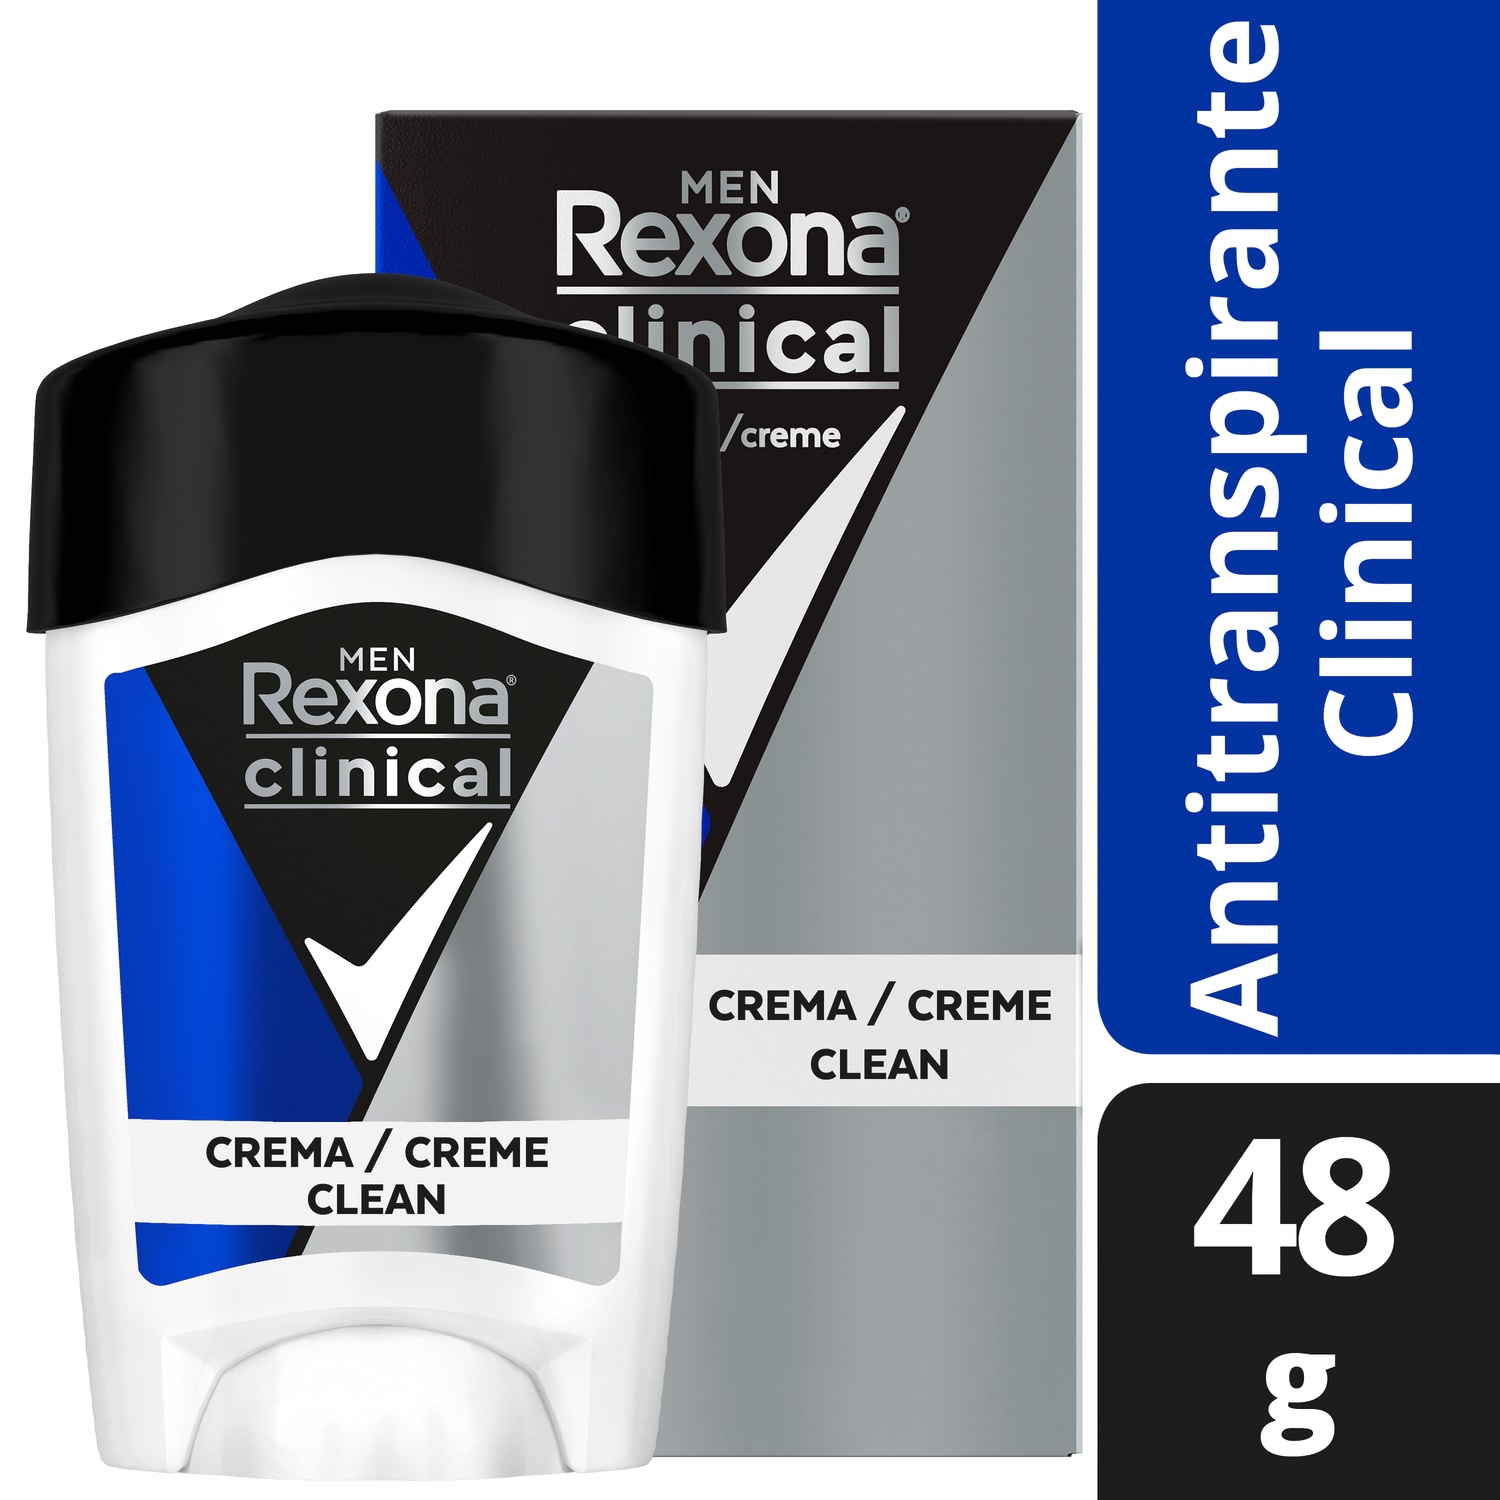 Rexona Antitranspirante para Hombre Clinical Clean en Crema
